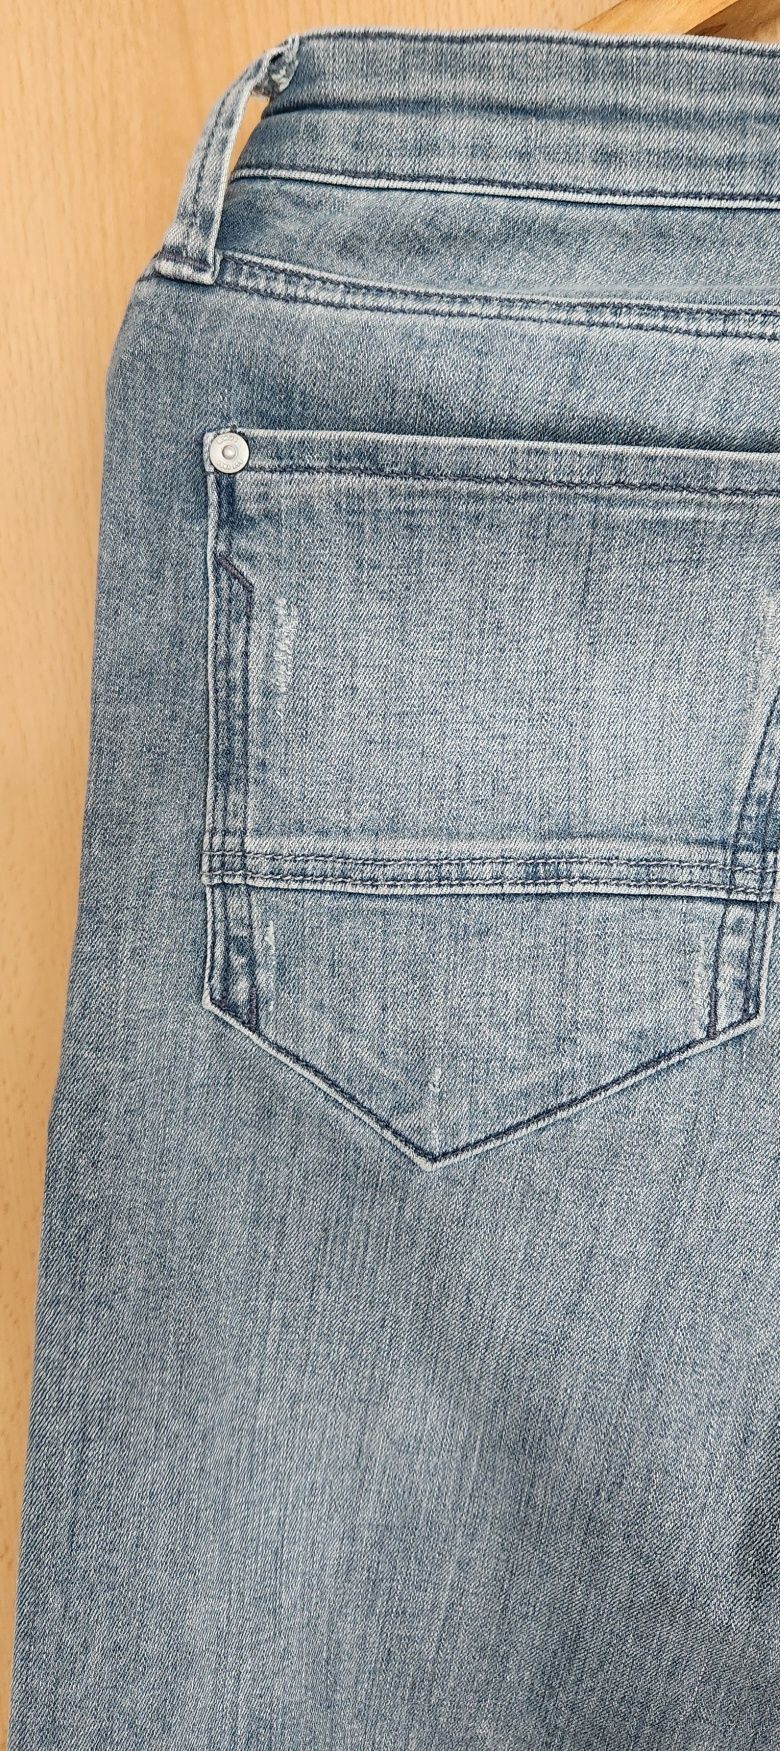 Używane spodnie jeansowe firmy Mavi
rozmiar 31/30